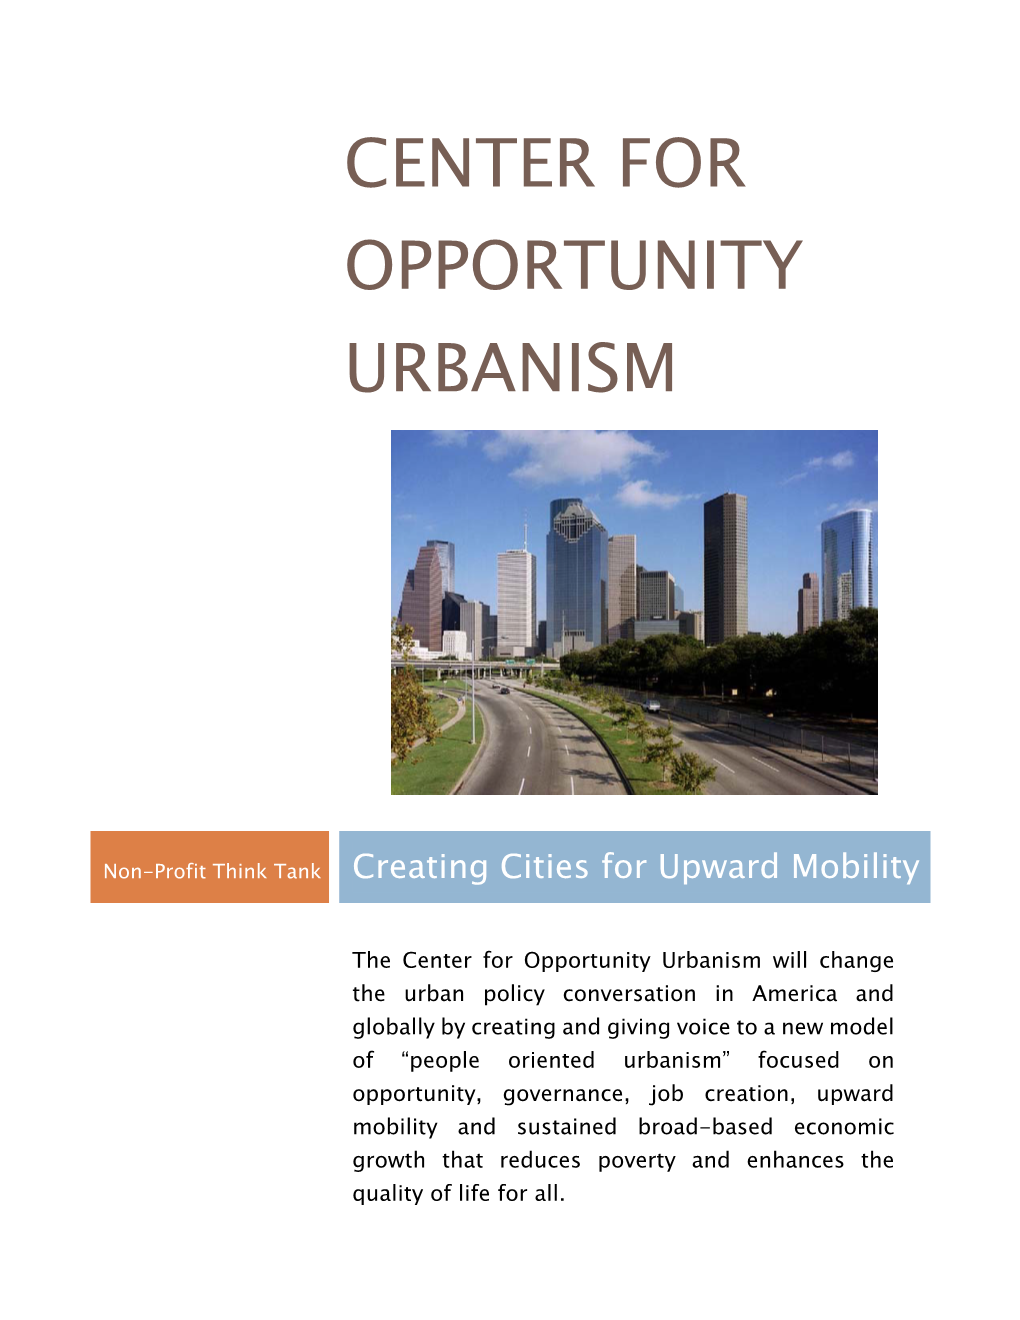 Center for Opportunity Urbanism